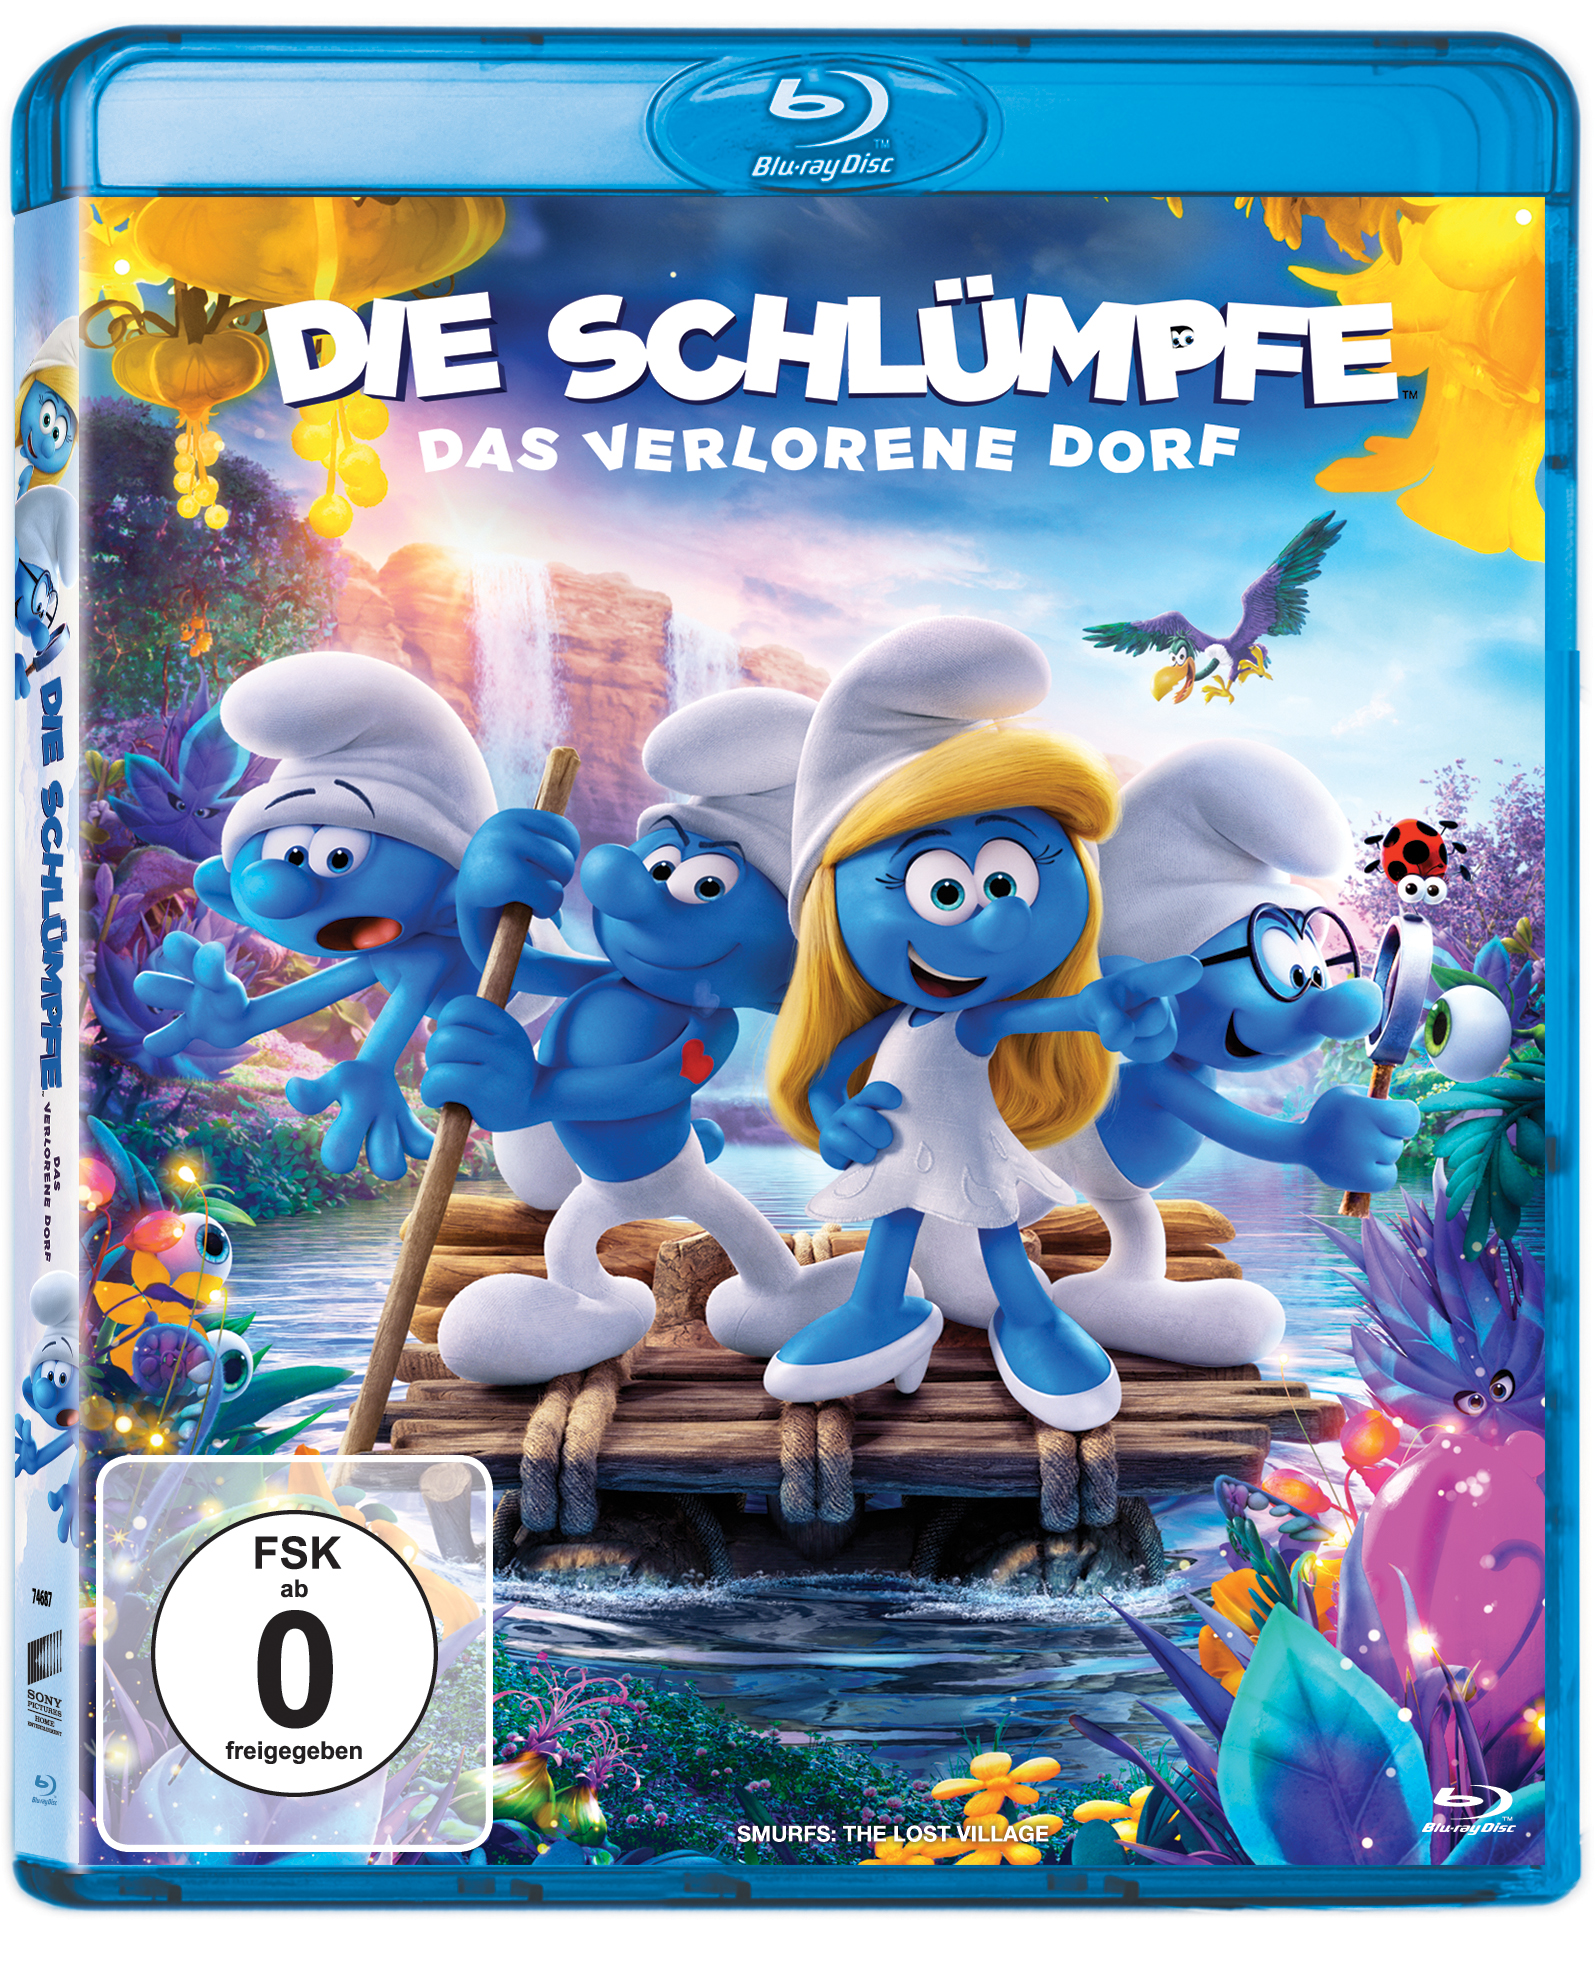 Die Blu-ray verlorene Schlümpfe Das - Dorf